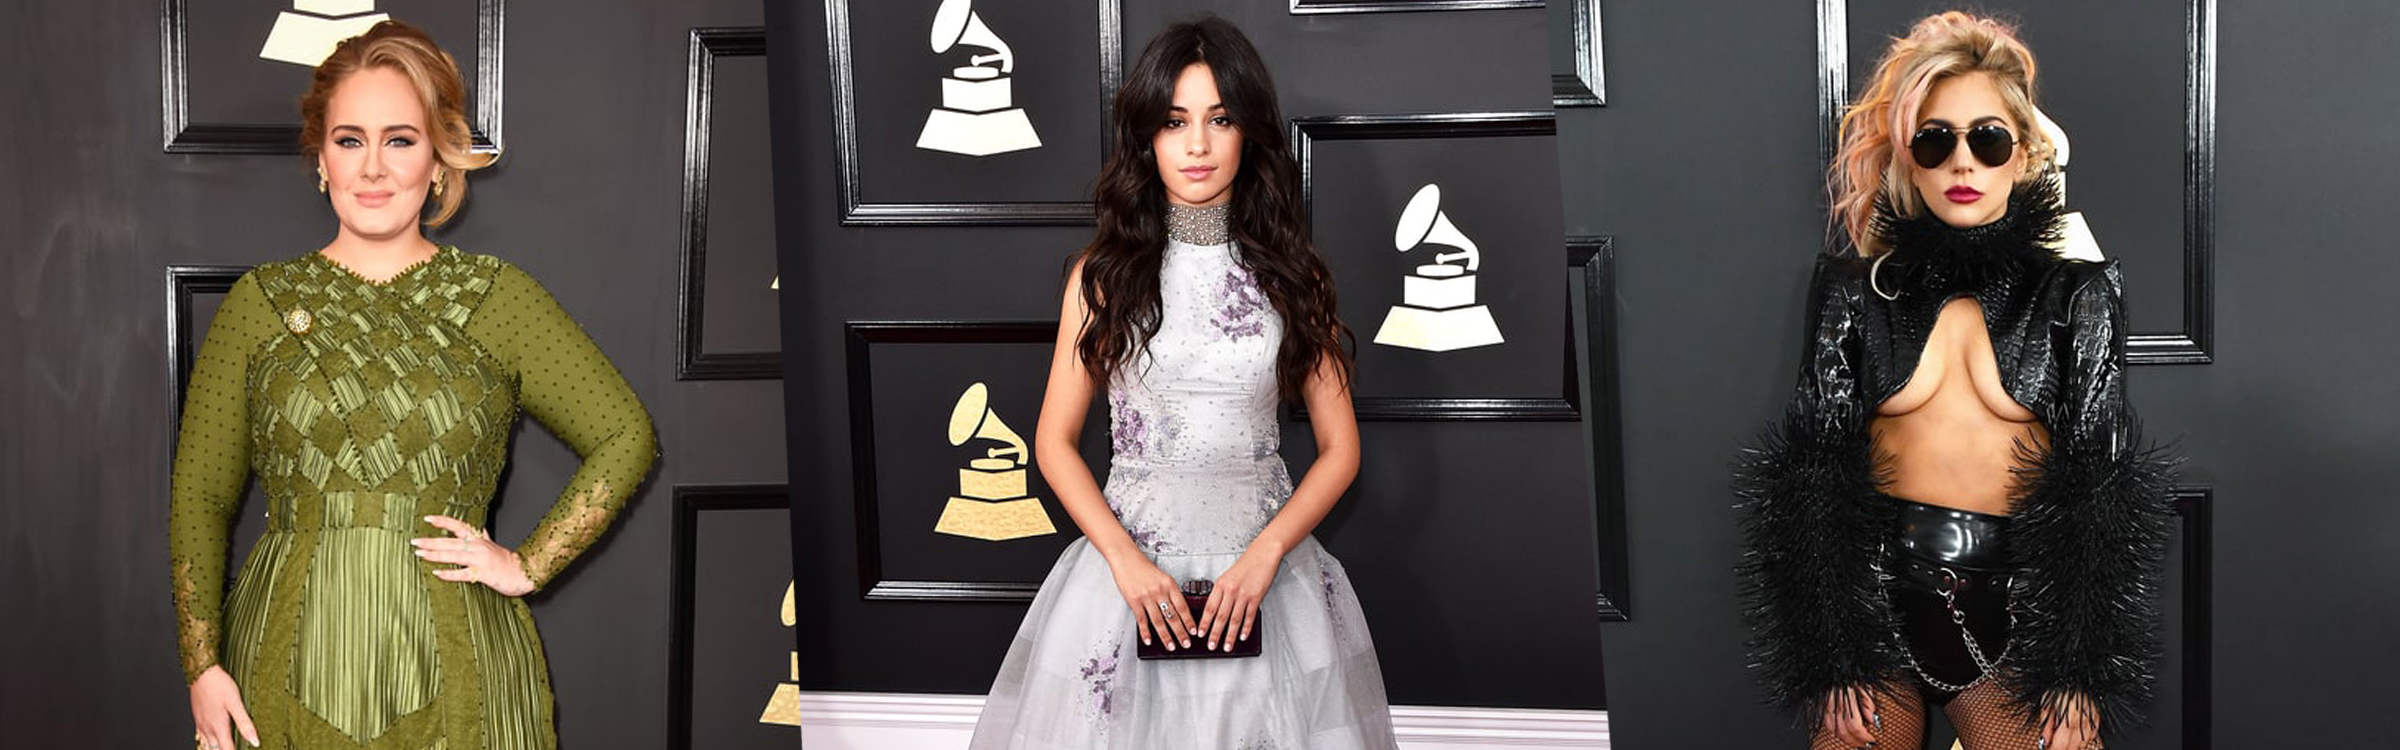 Grammys jurken header